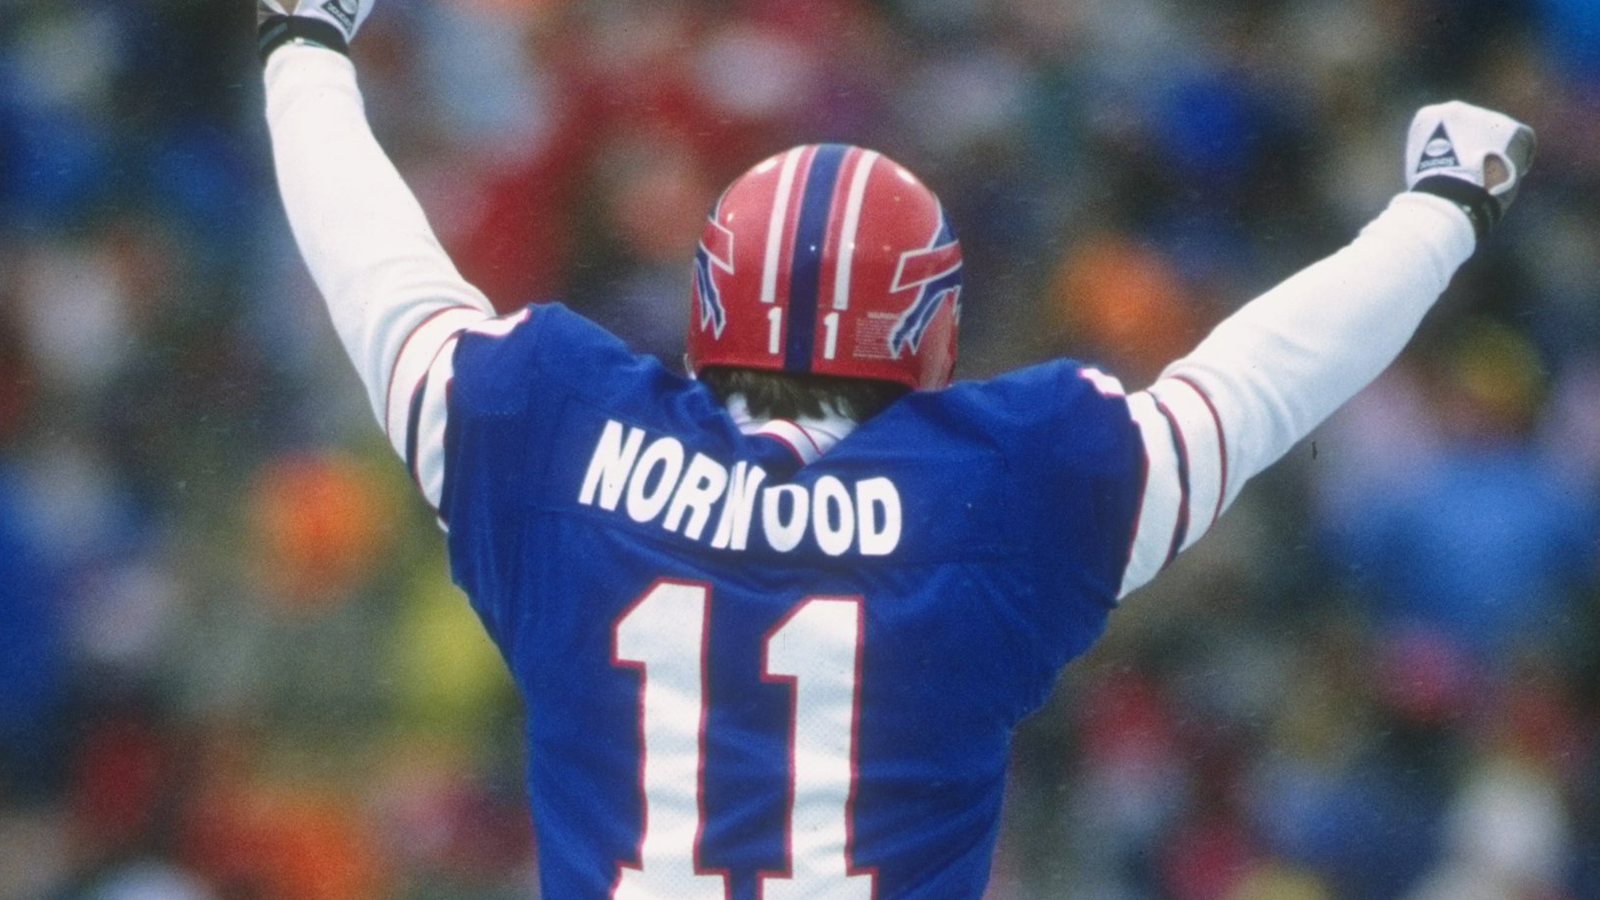 
                <strong>Scott Norwood (Buffalo Bills)</strong><br>
                Die Bills zogen nach Norwoods Drama noch dreimal hintereinander in den Super Bowl ein, nur um auch diese drei Endspiele zu verlieren. Das wiederum lag jedoch dann nicht mehr an Norwood – im Gegenteil: Beim Super-Bowl-Run 1991 war sein 44-Yard-FG der Decider im AFC Championship Game gegen die Denver Broncos. Das anschließende Endspiel gegen Washington war Norwoods letzter Auftritt in der NFL.
              